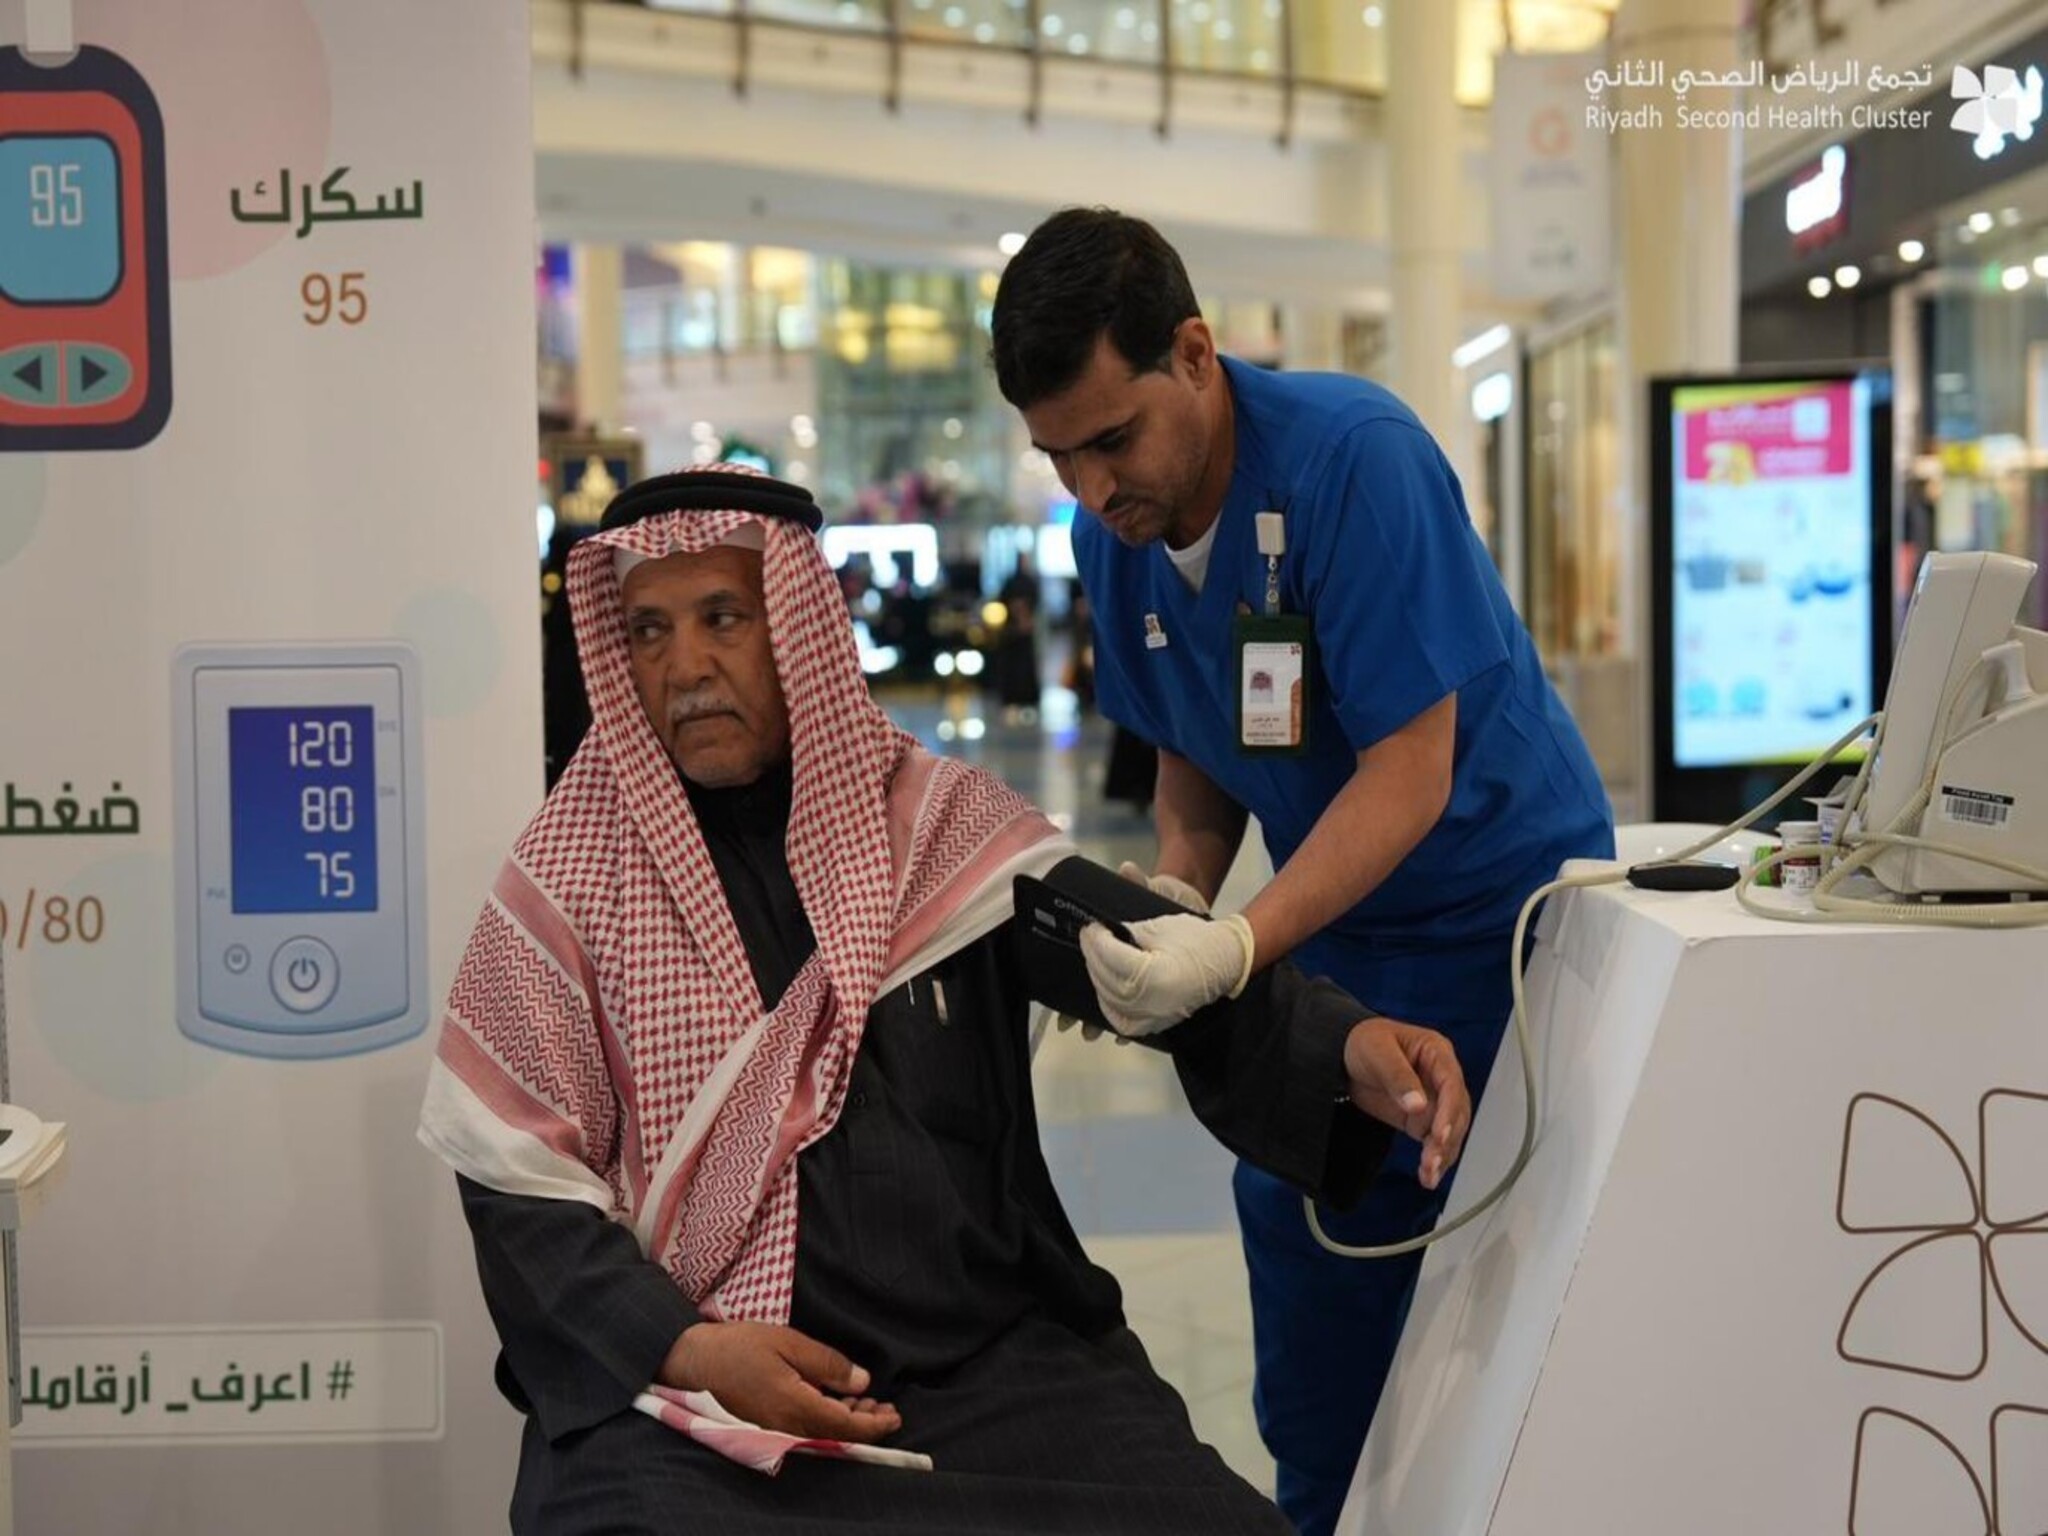 تجمع الرياض الصحي الثاني يكشف في بيان هام عن أماكن توافر تطعيمات الحج 